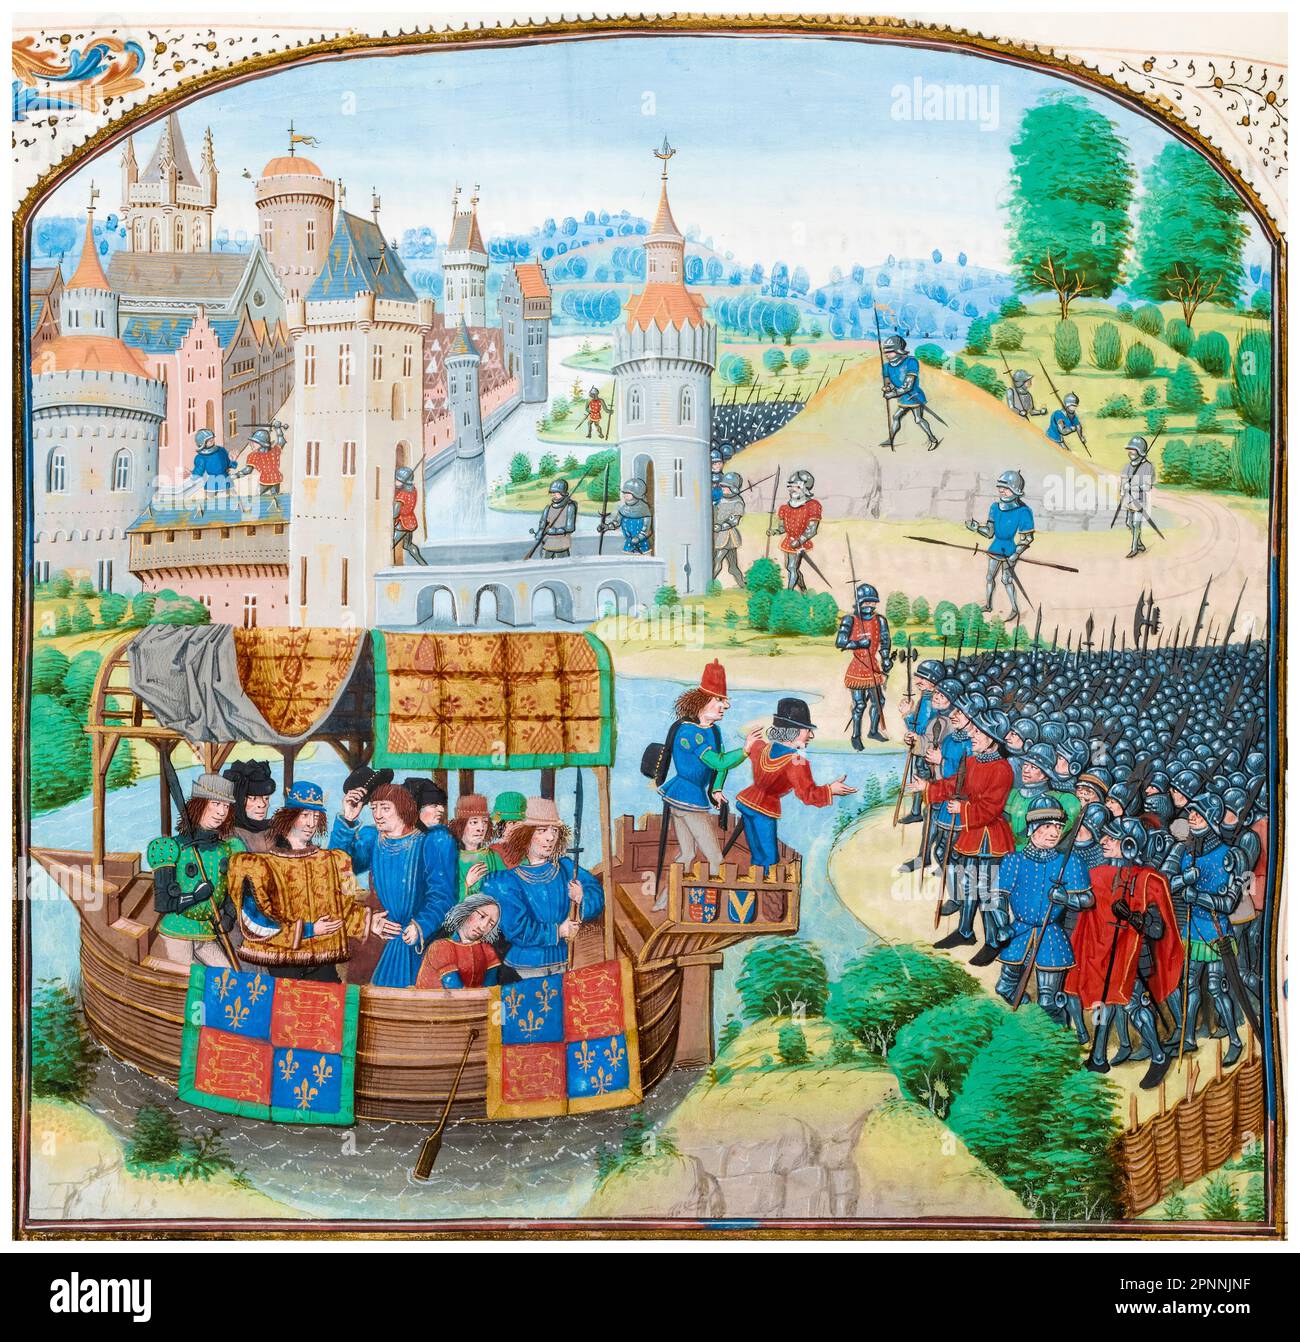 La révolte paysanne : le roi Richard II d'Angleterre (1367-1400) rencontre les rebelles le 14th juin 1381, miniature de la peinture manuscrite illuminée de Jean Froissart, 1401-1499 Banque D'Images